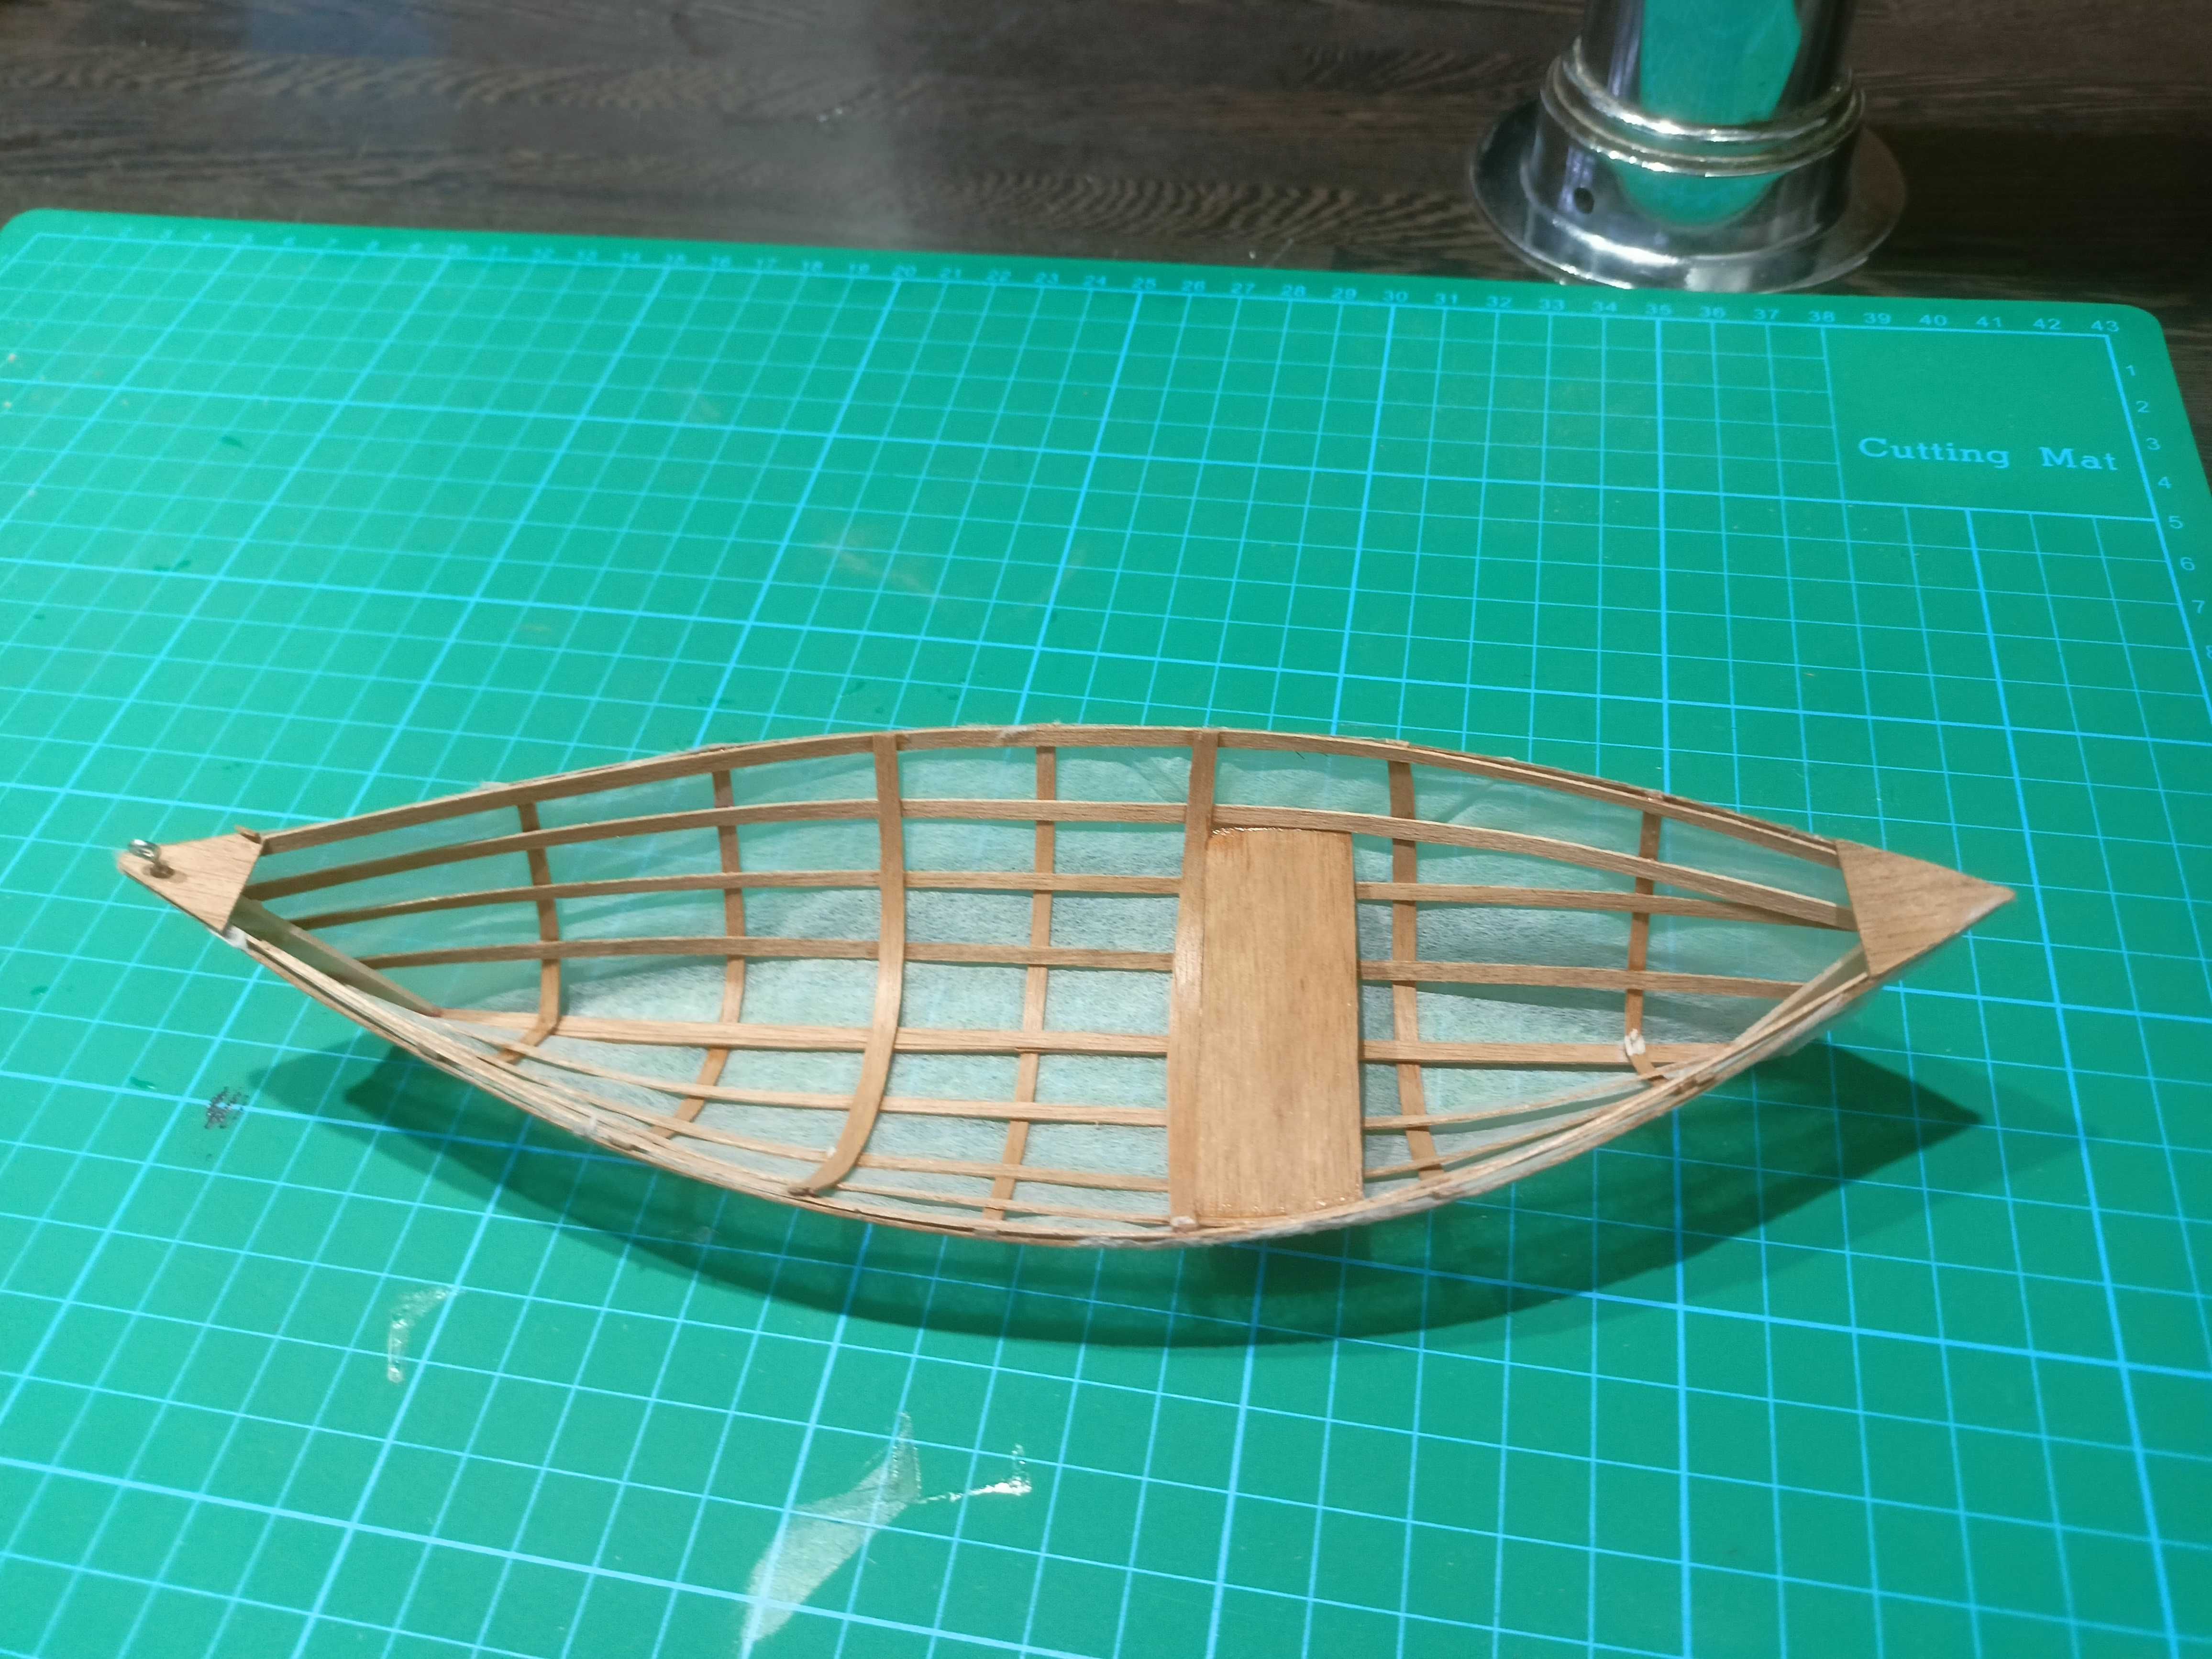 Model canoe skin on frame